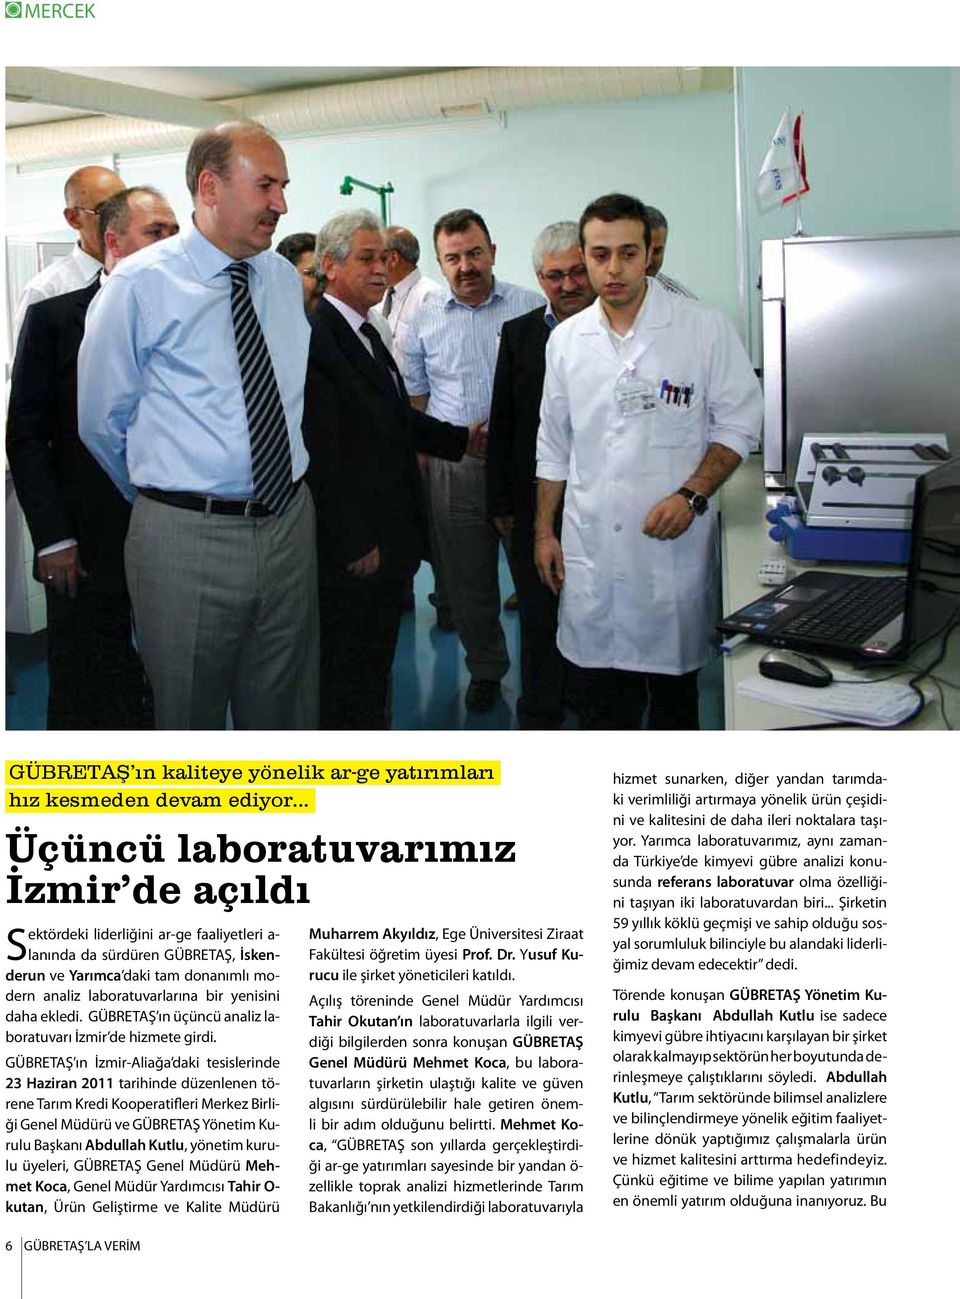 yenisini daha ekledi. GÜBRETAŞ ın üçüncü analiz laboratuvarı İzmir de hizmete girdi.